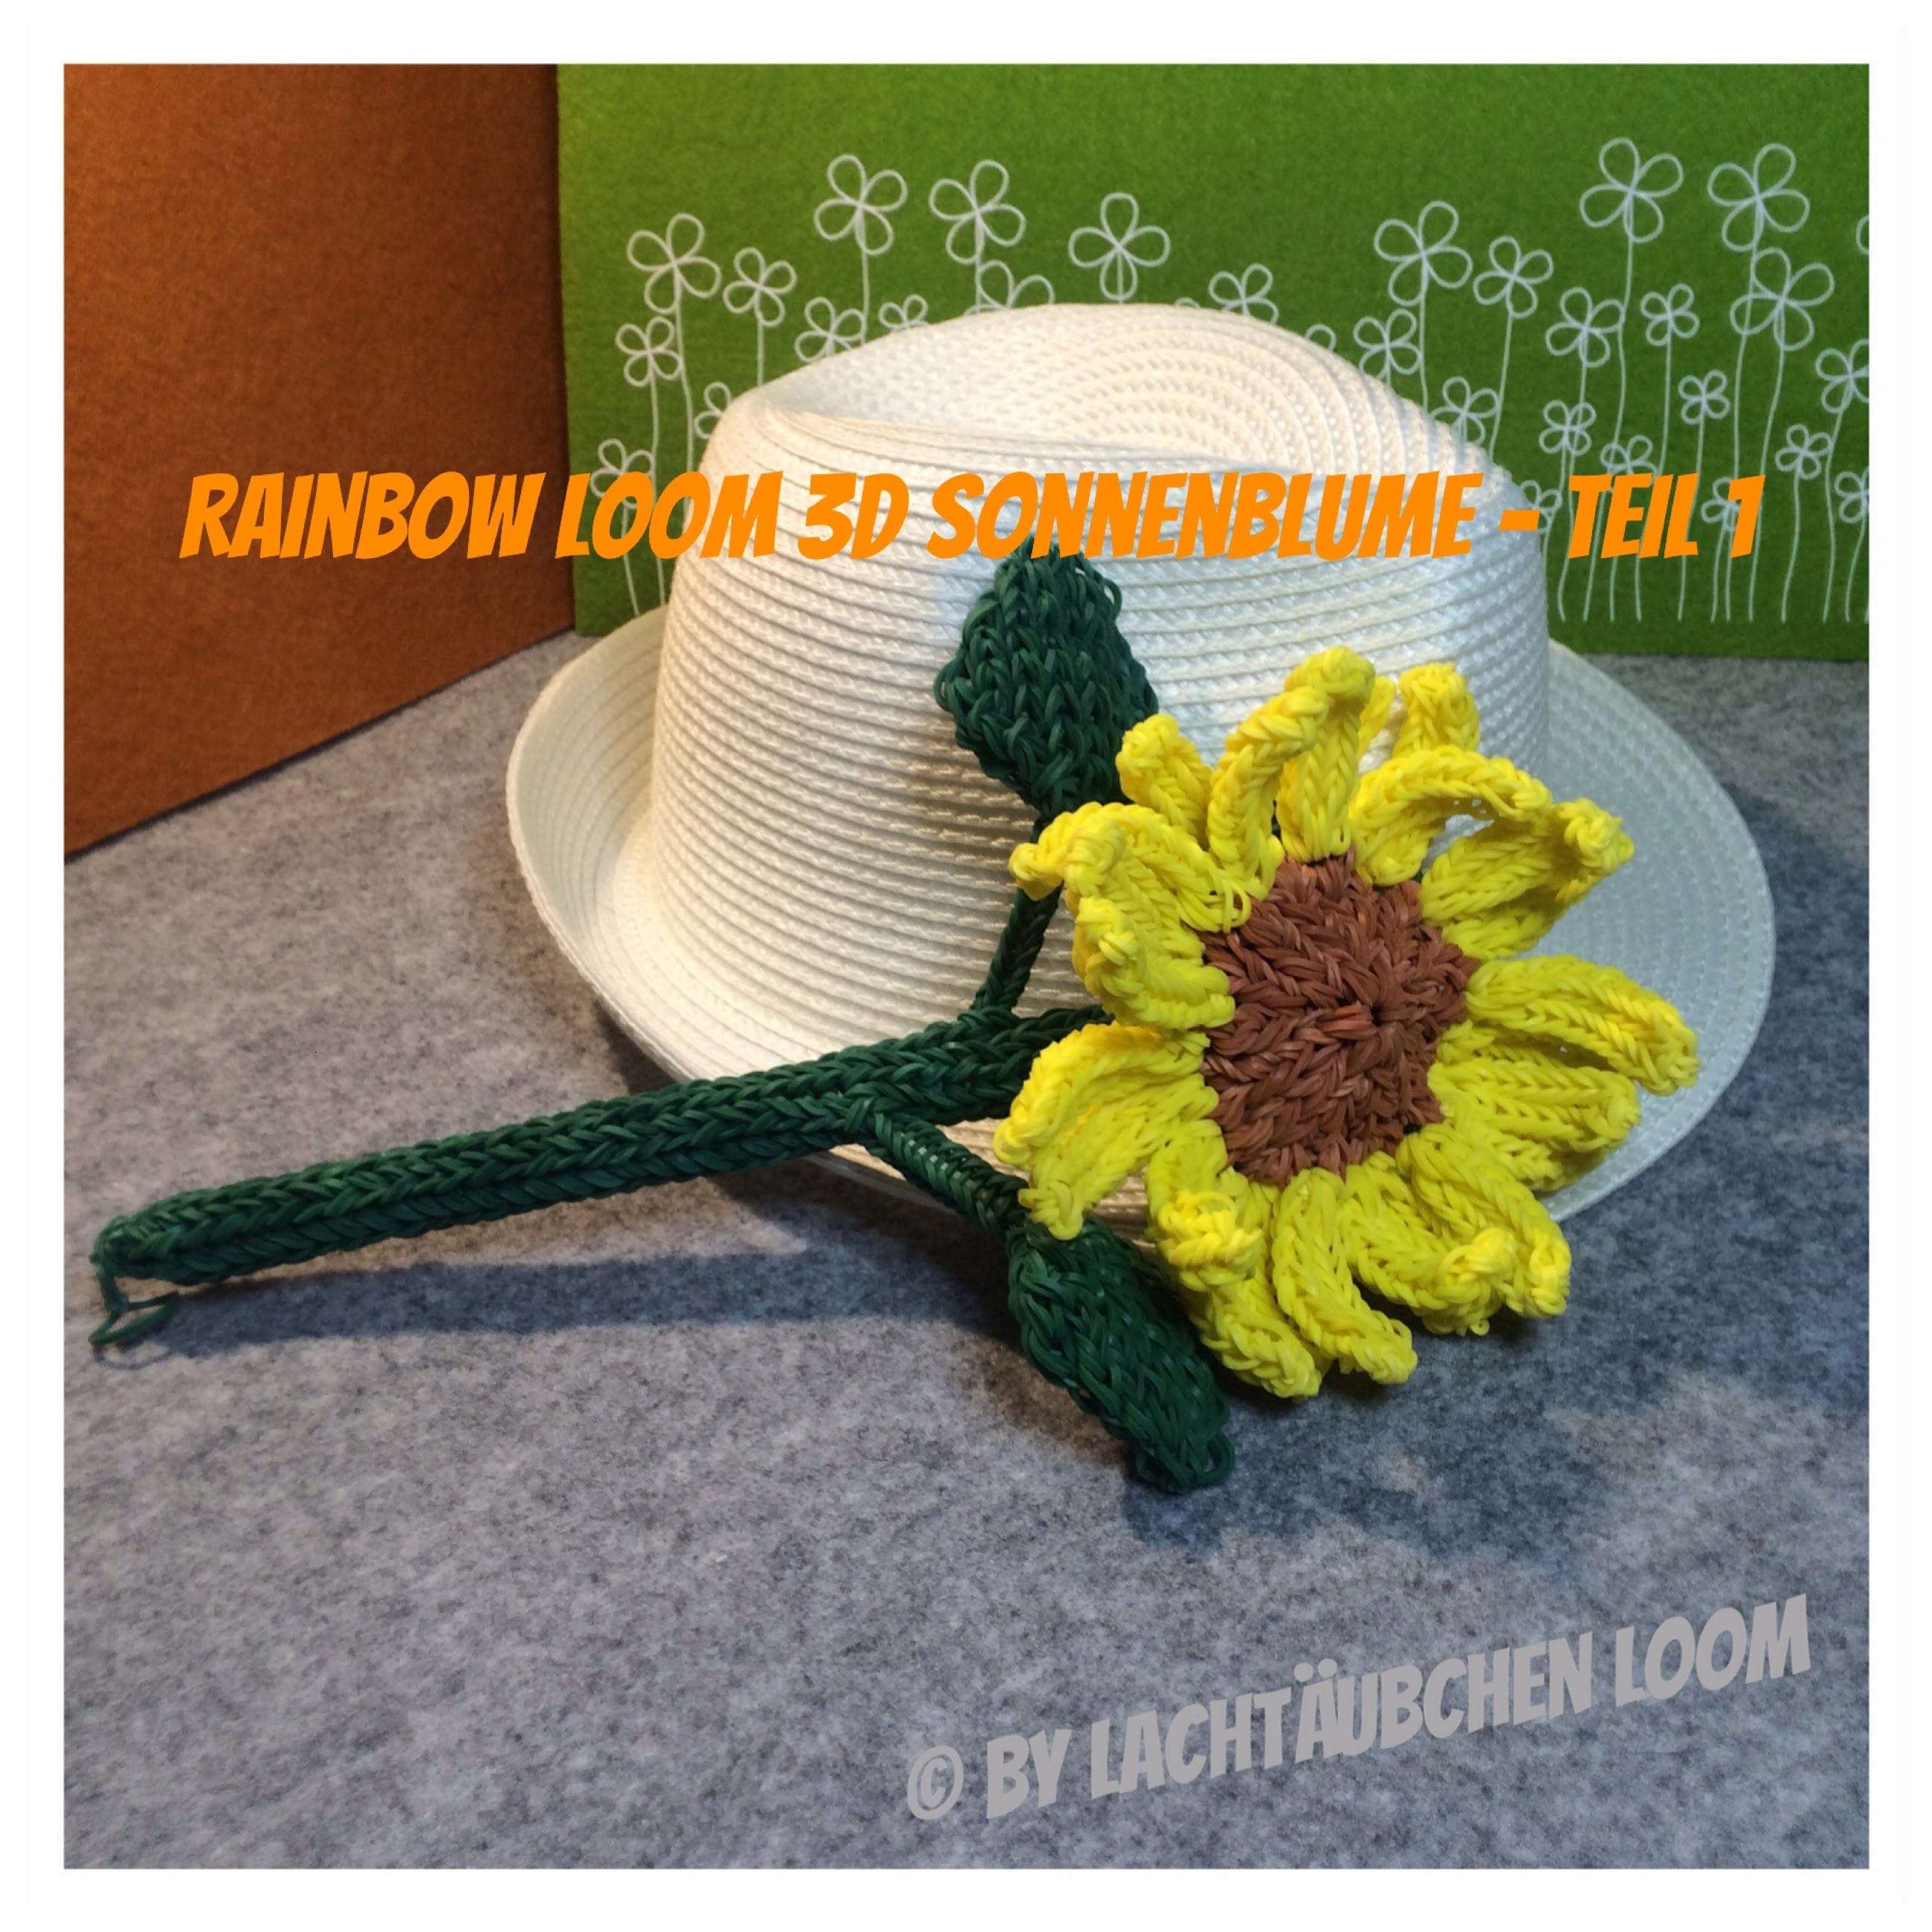 Rainbow Loom 3D Sonnenblume - von Lachtäubchen Loom - Teil 1